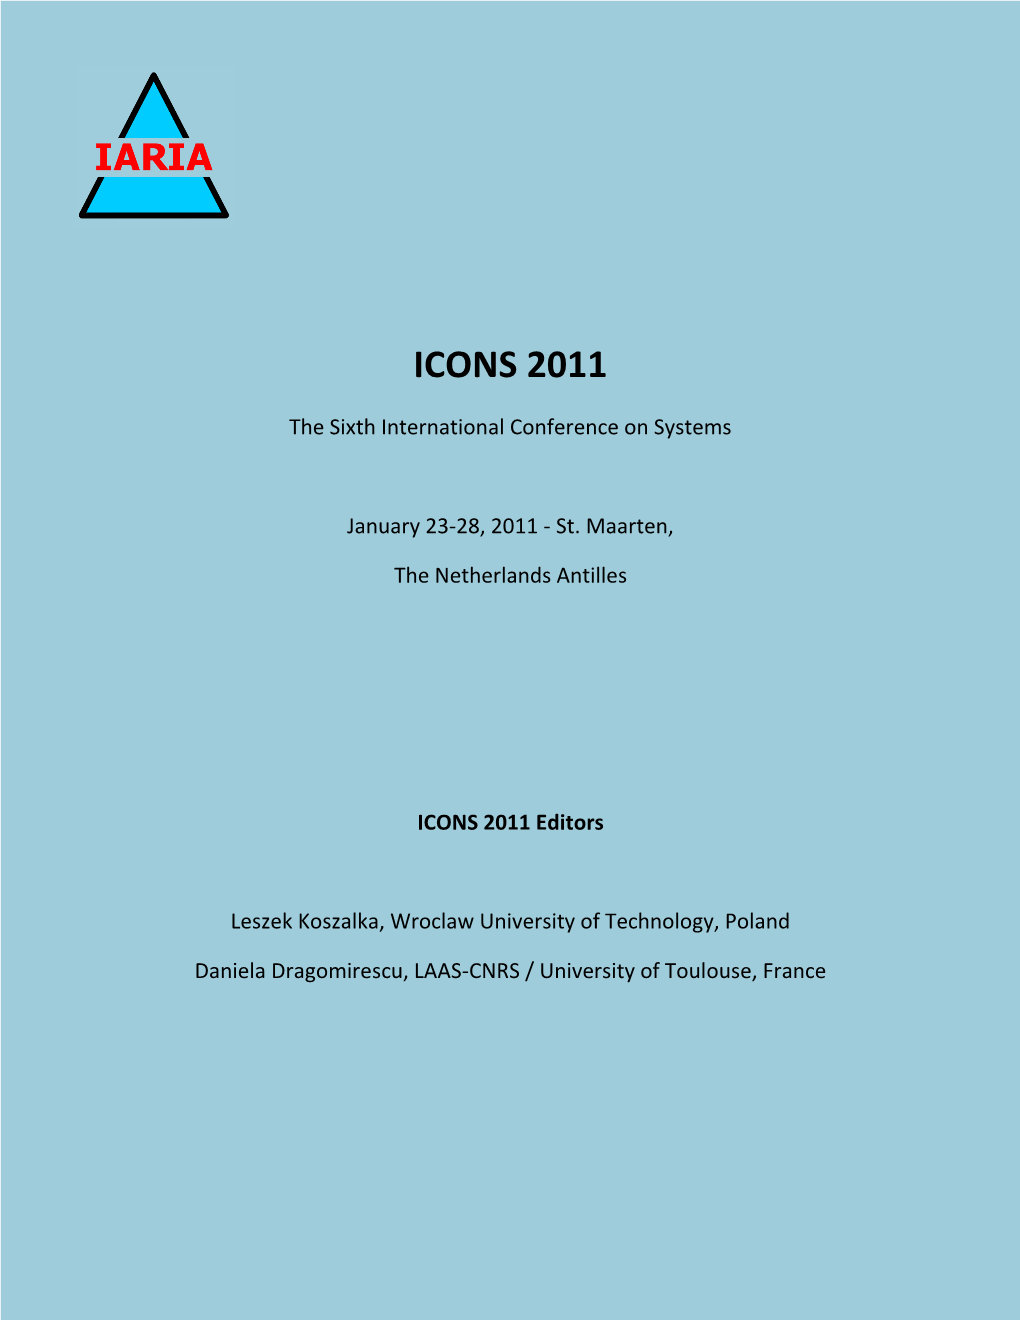 ICONS 2011 Proceedings